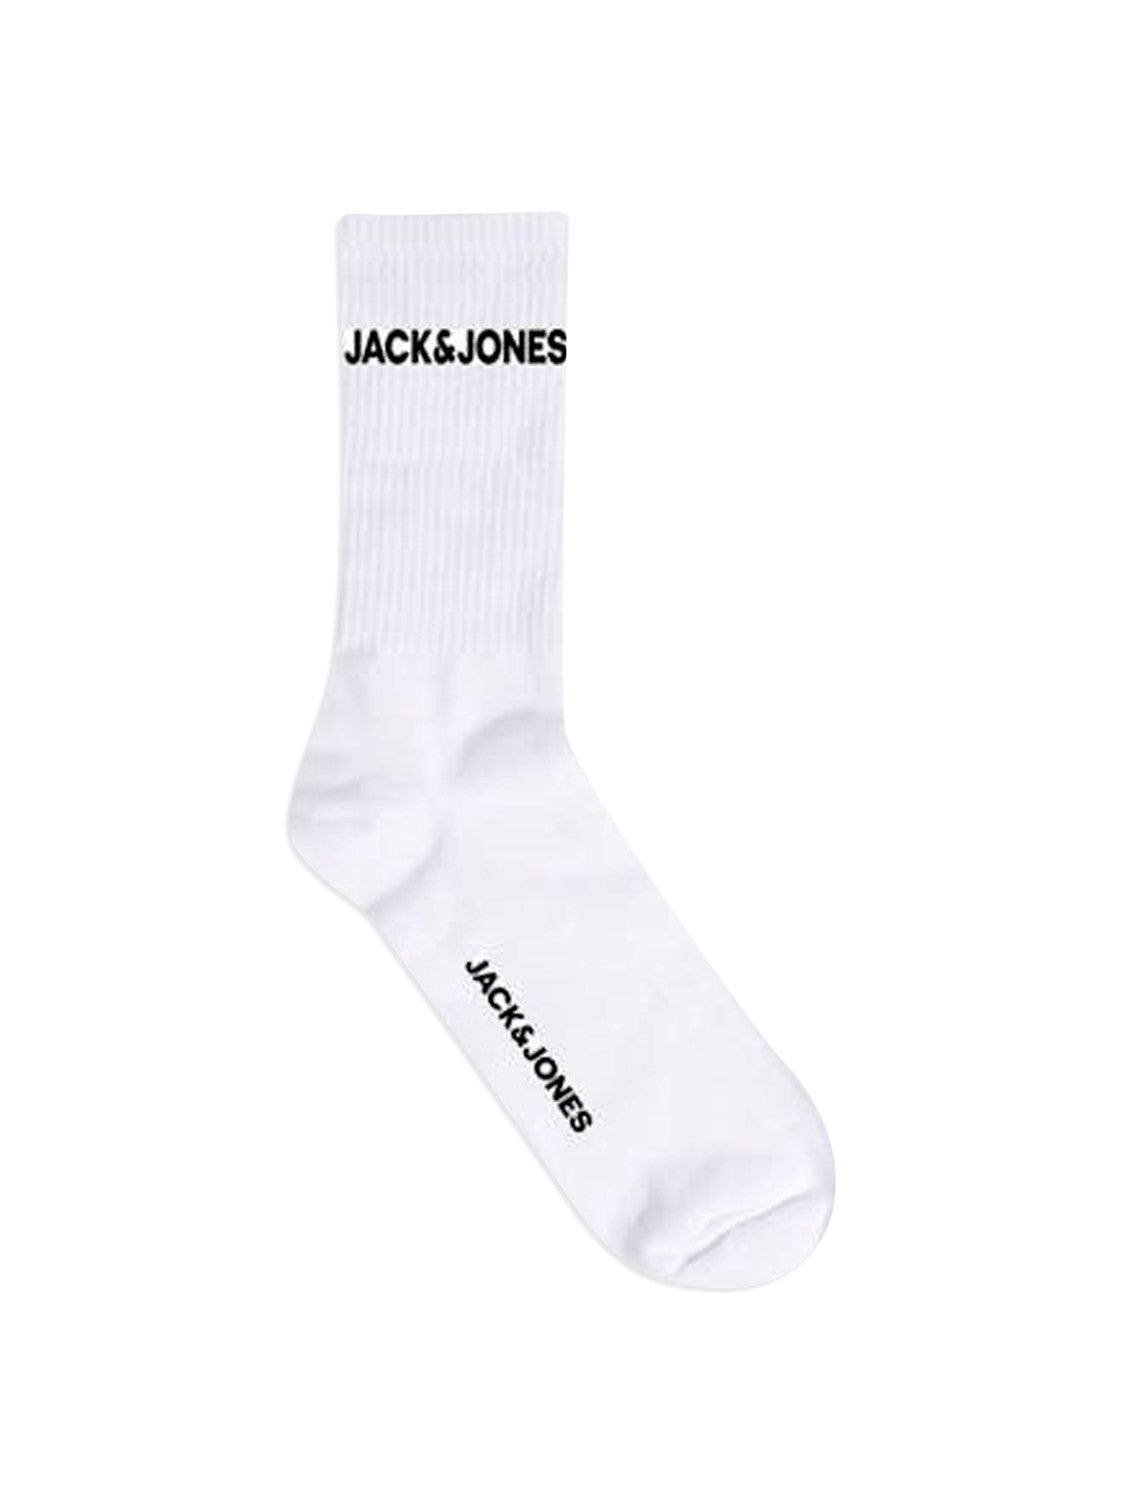 JACK & JONES 5 PACK TENNIS SOCK - WHITE